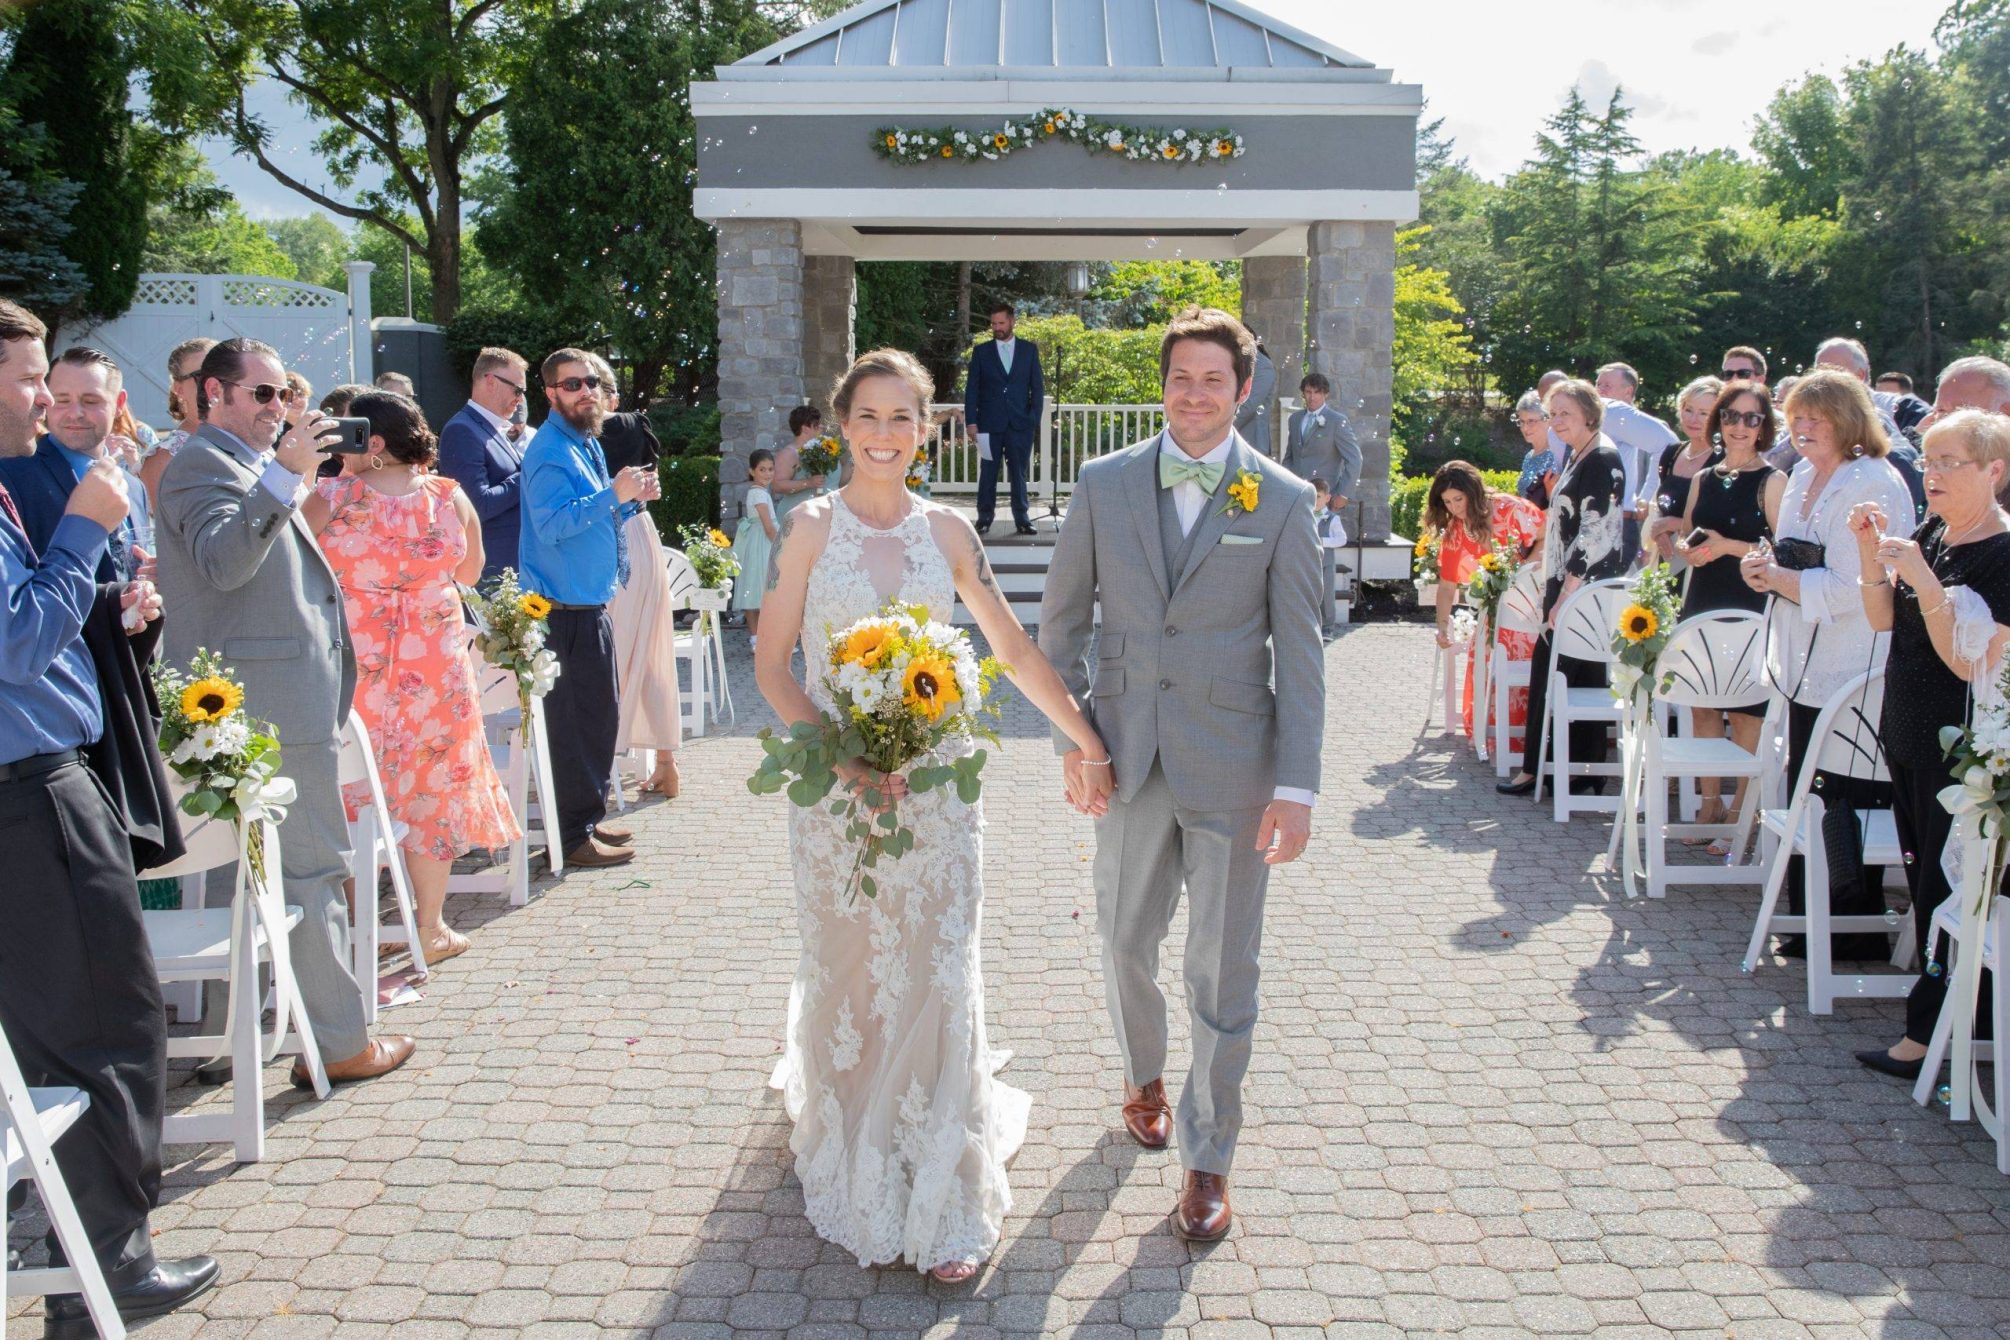 Bridgewater Manor bride and groom in outdoor wedding ceremony